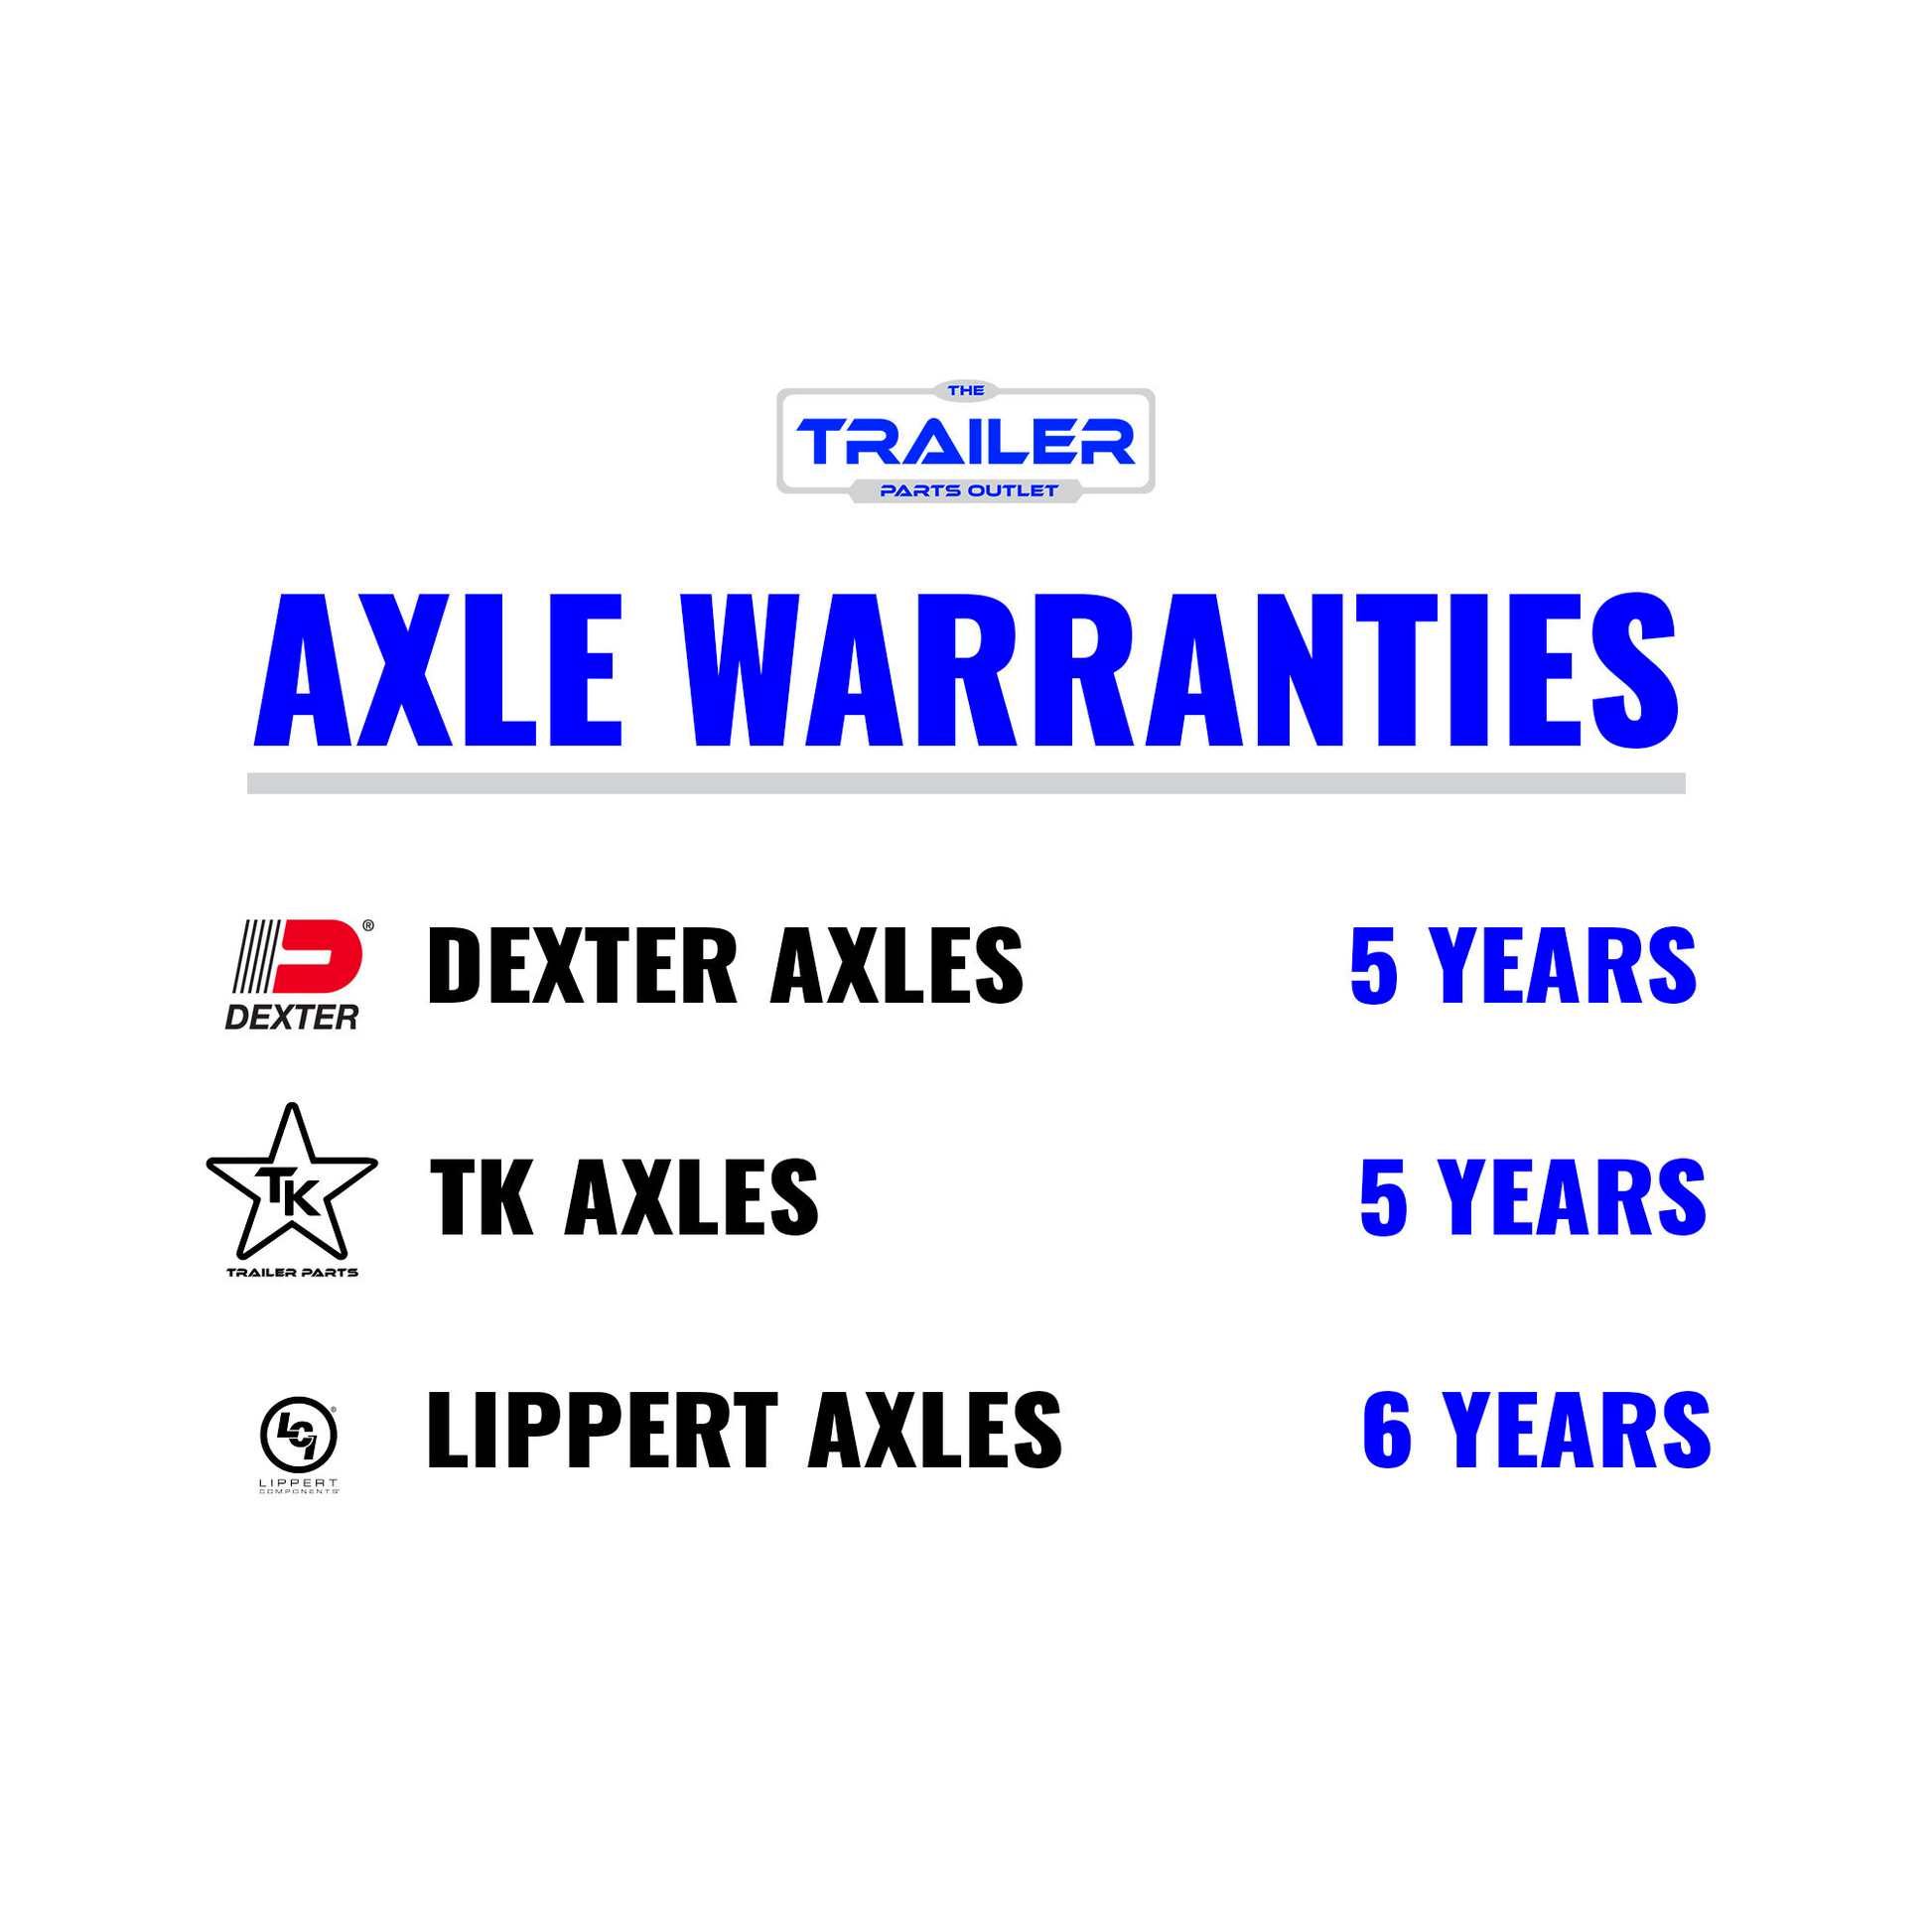 Axle Warranties 